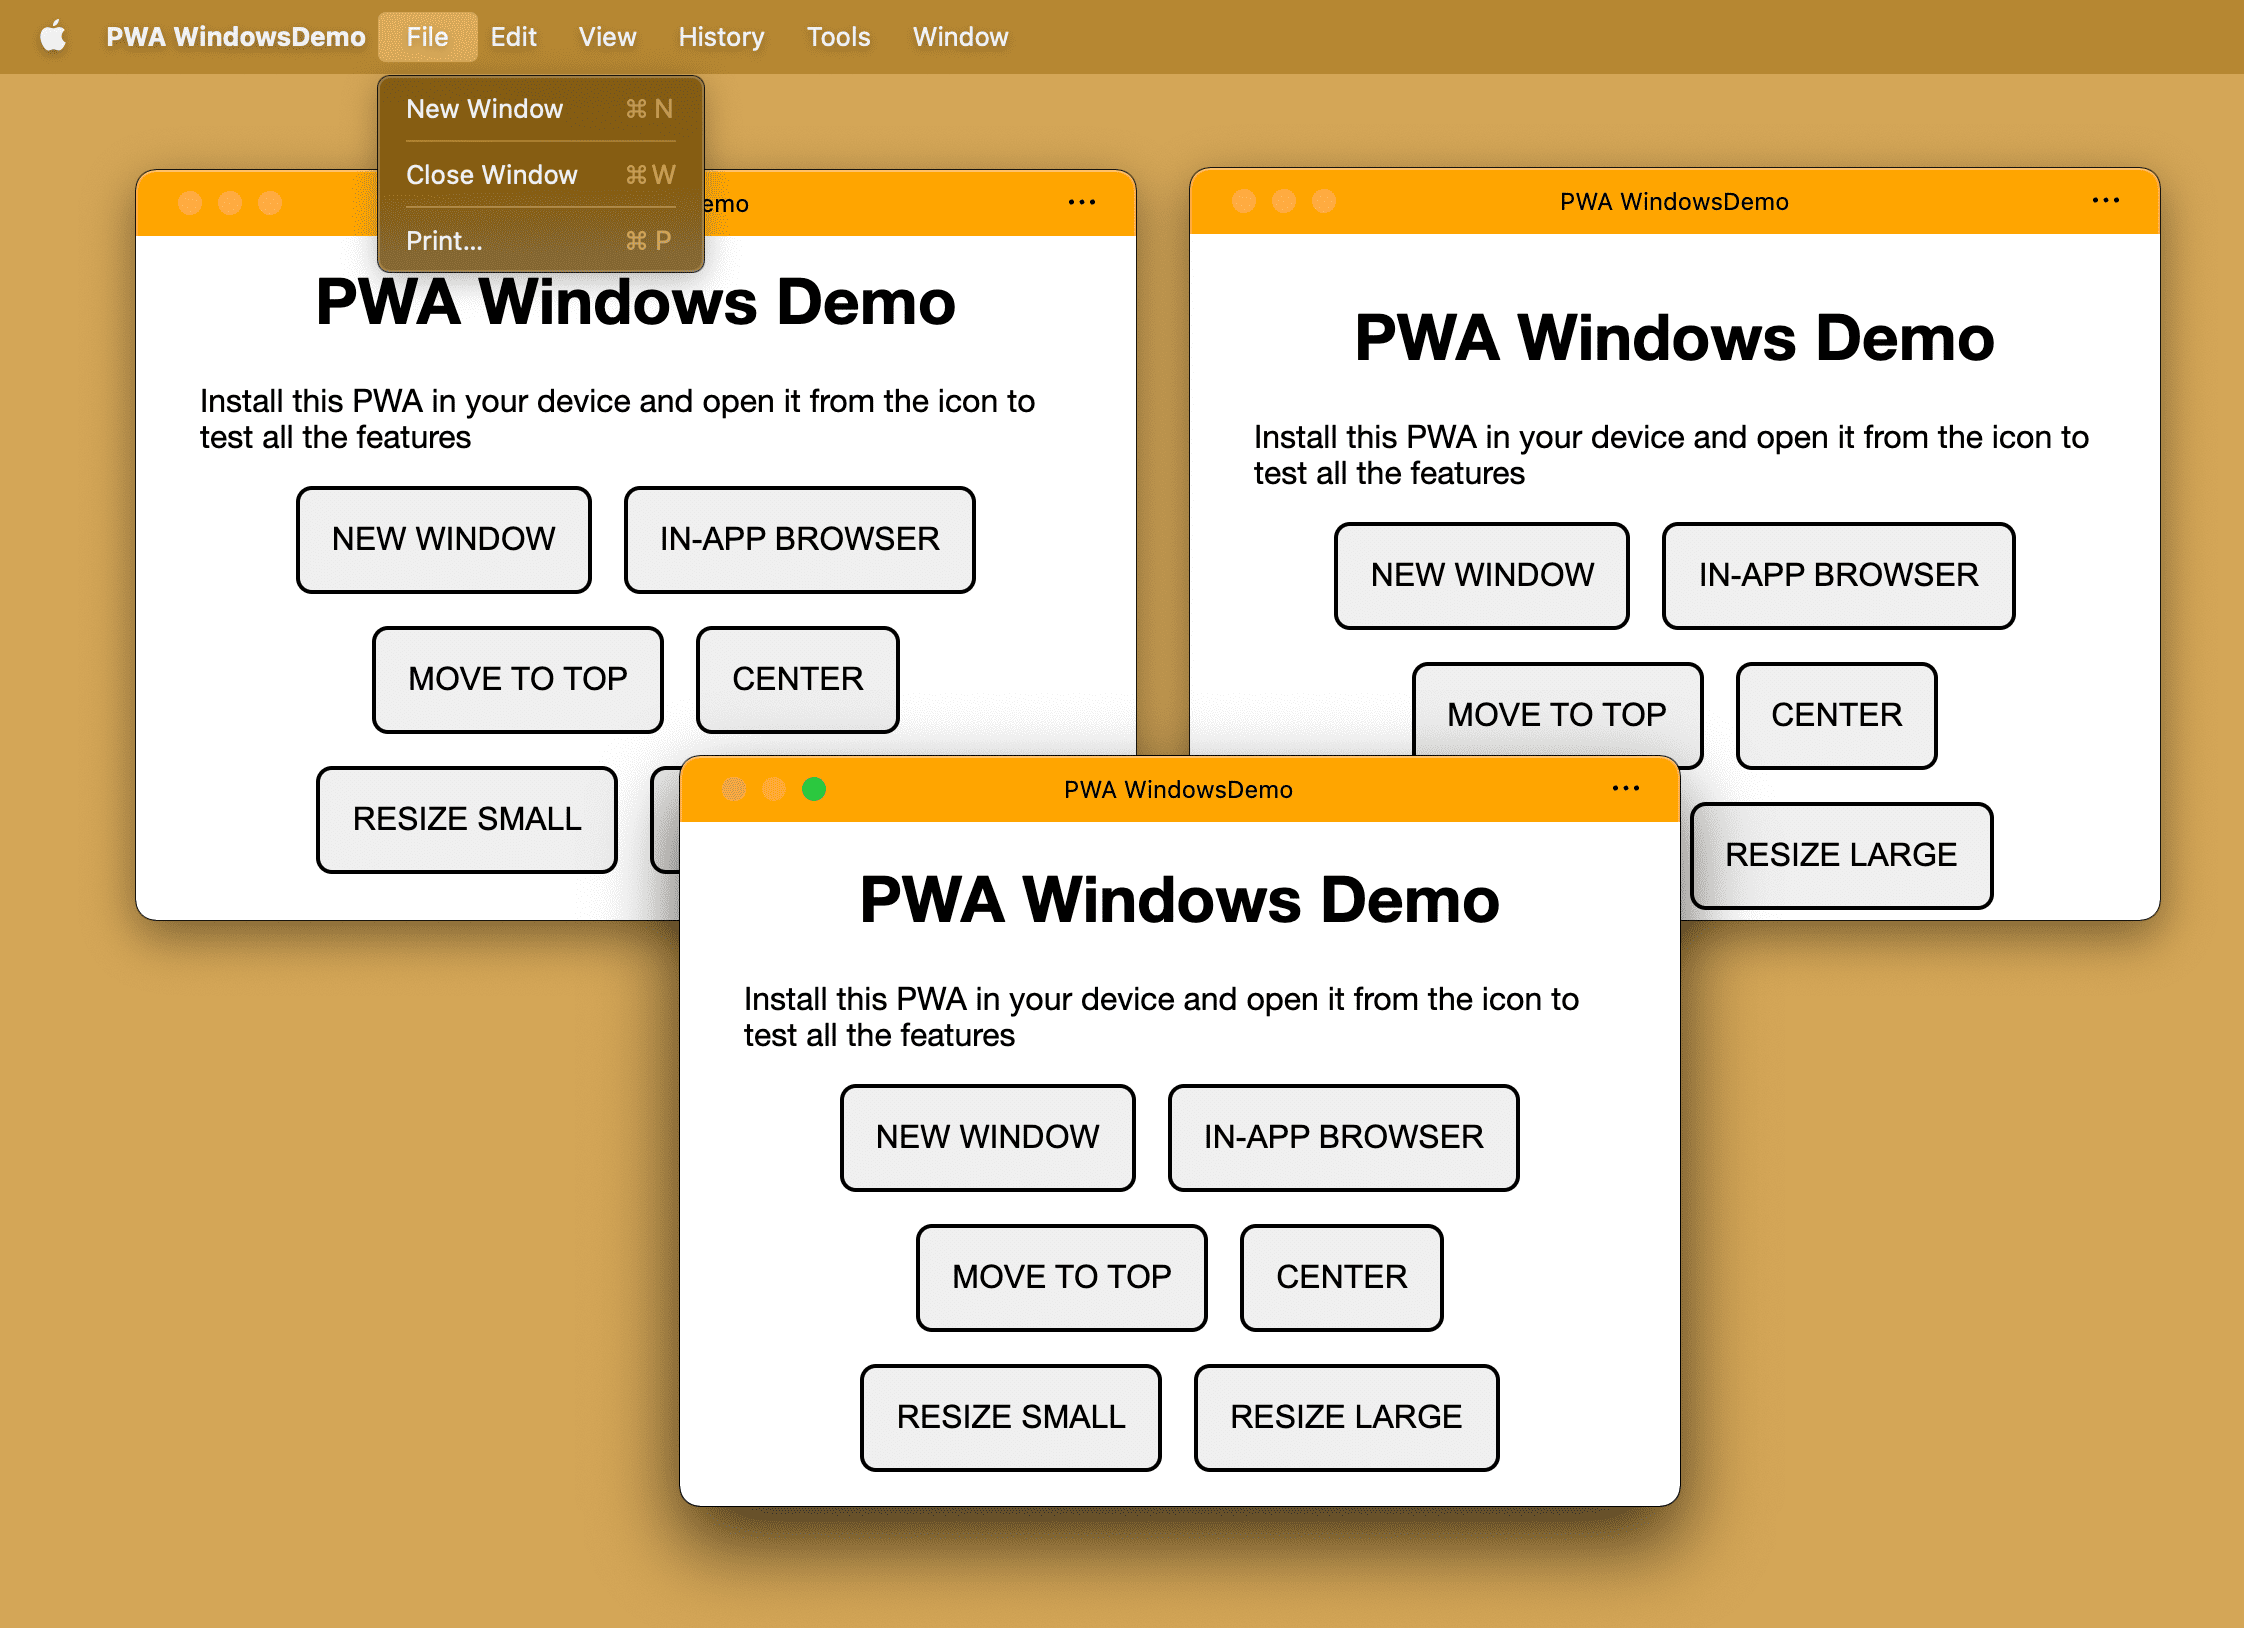 同じインストール済み PWA で、デスクトップ オペレーティング システムで複数のウィンドウが開かれている。